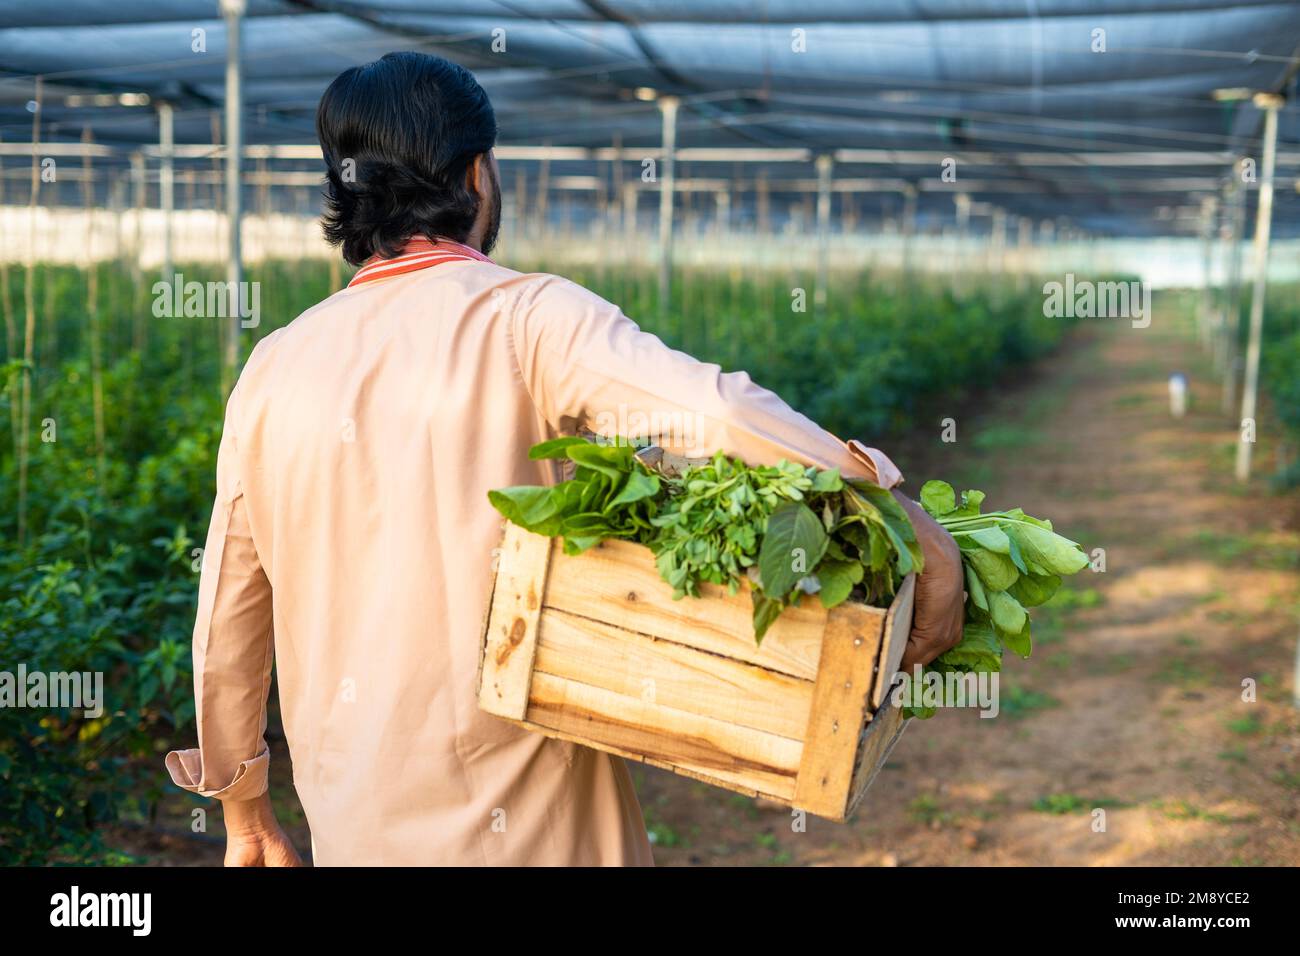 Rückblick eines Landwirts mit frischem Gemüse im Gewächshaus für den Markt – Konzept des ökologischen Landbaus, des Kleinbetriebs und der fleißigen Arbeit Stockfoto